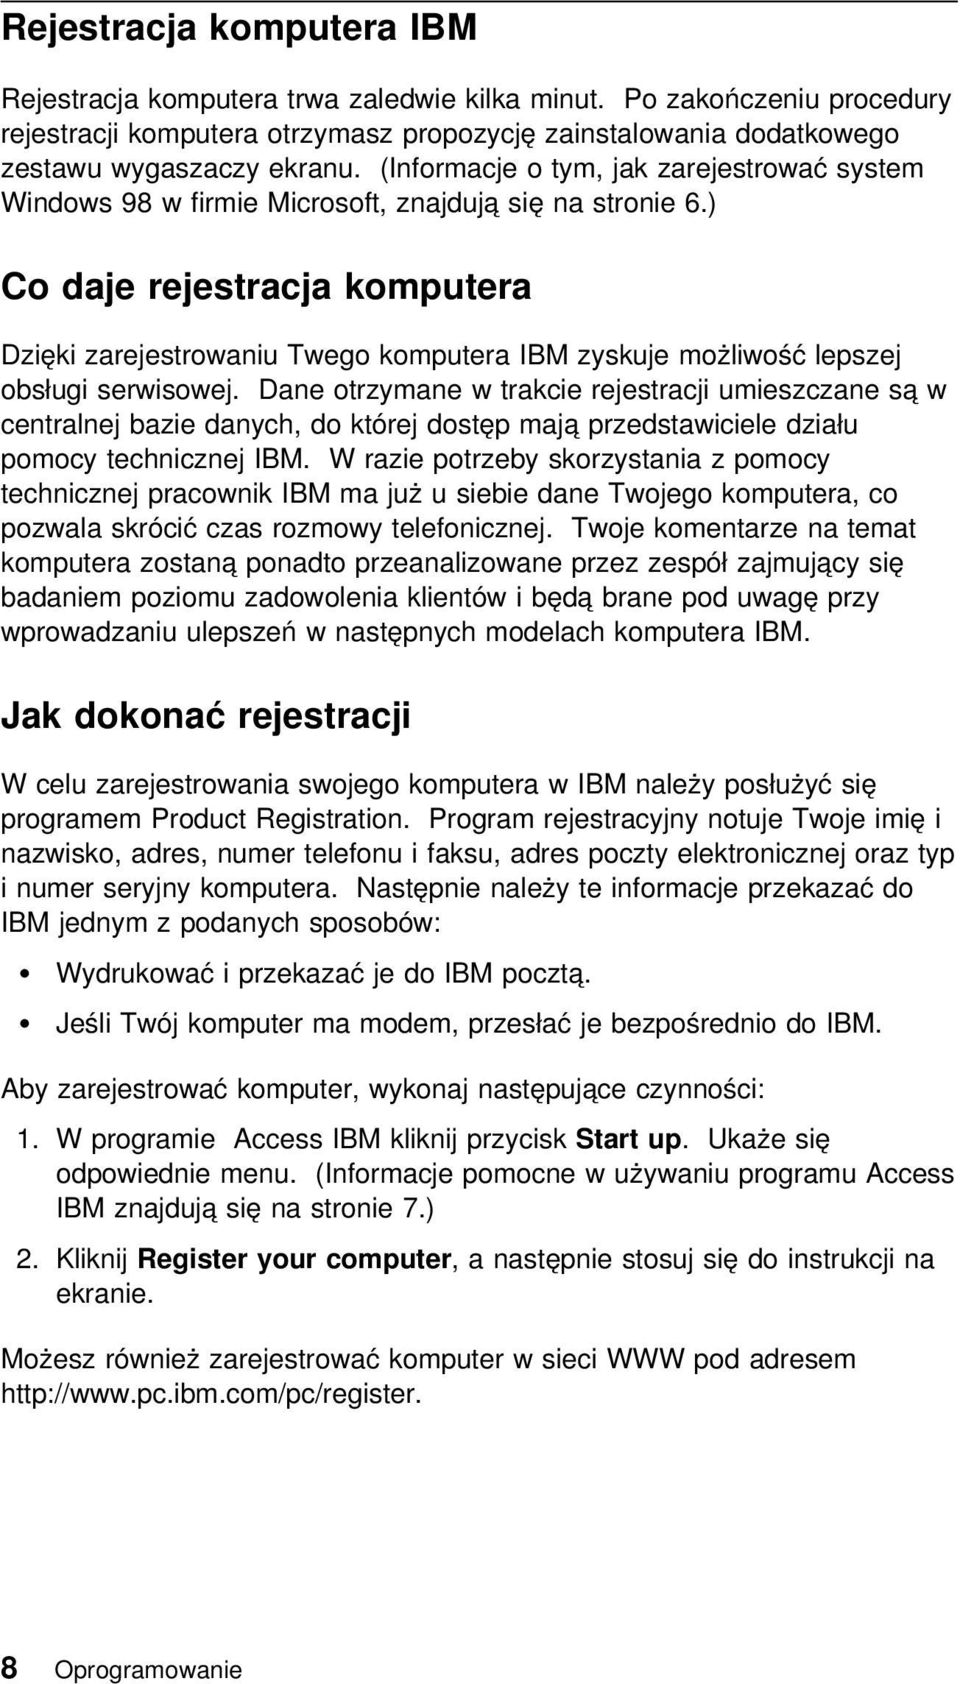 ) Co daje rejestracja komputera Dzięki zarejestrowaniu Twego komputera IBM zyskuje możliwość lepszej obsługi serwisowej.